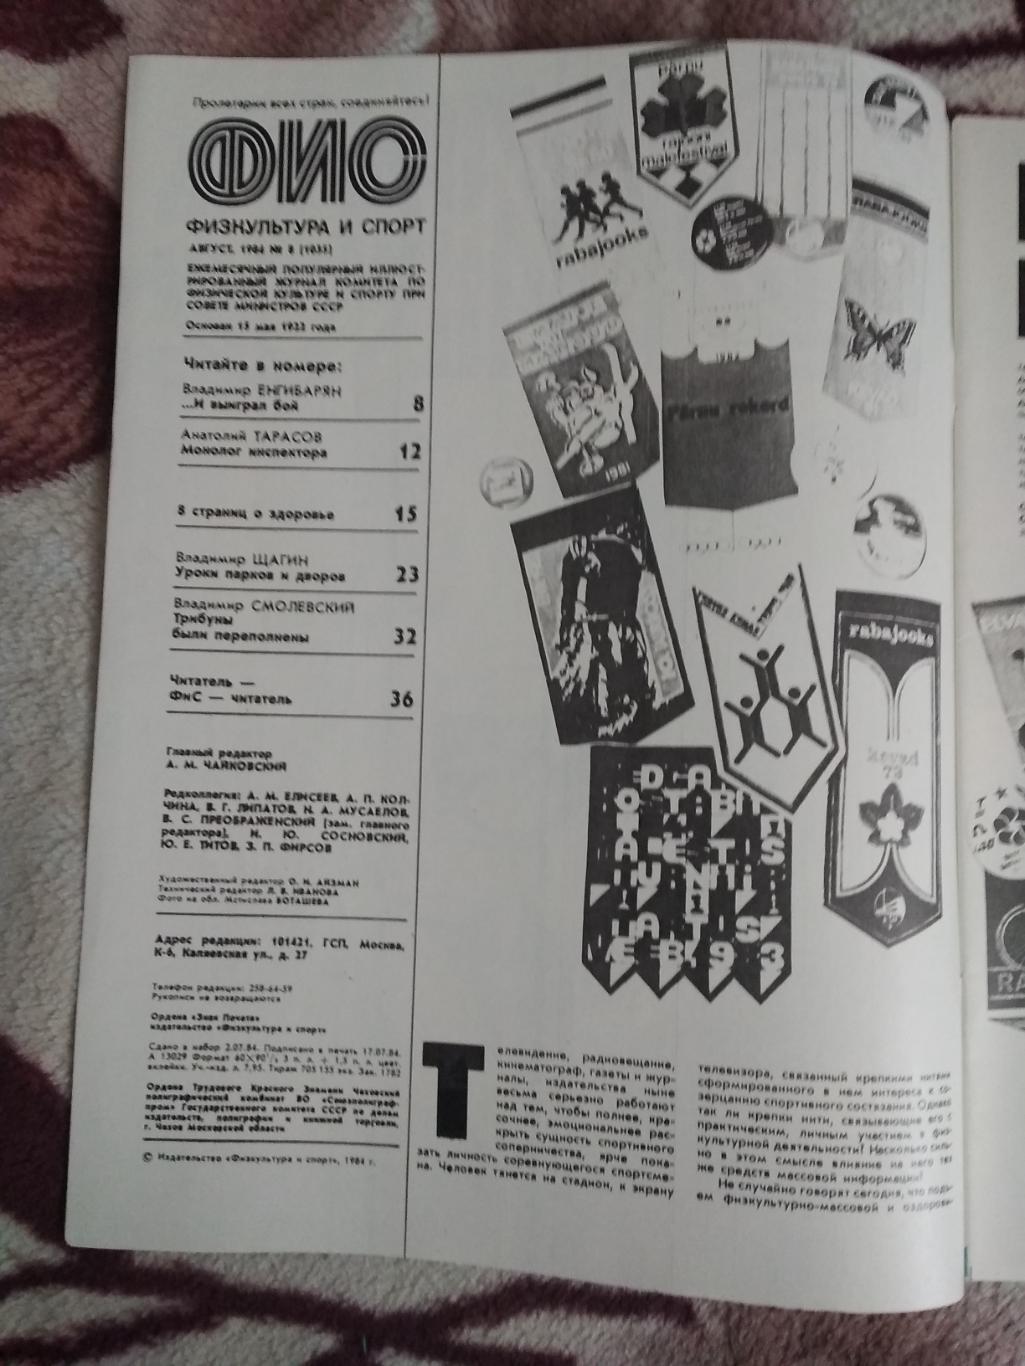 Журнал.Физкультура и спорт № 8 1984 г. (ФиС). 1